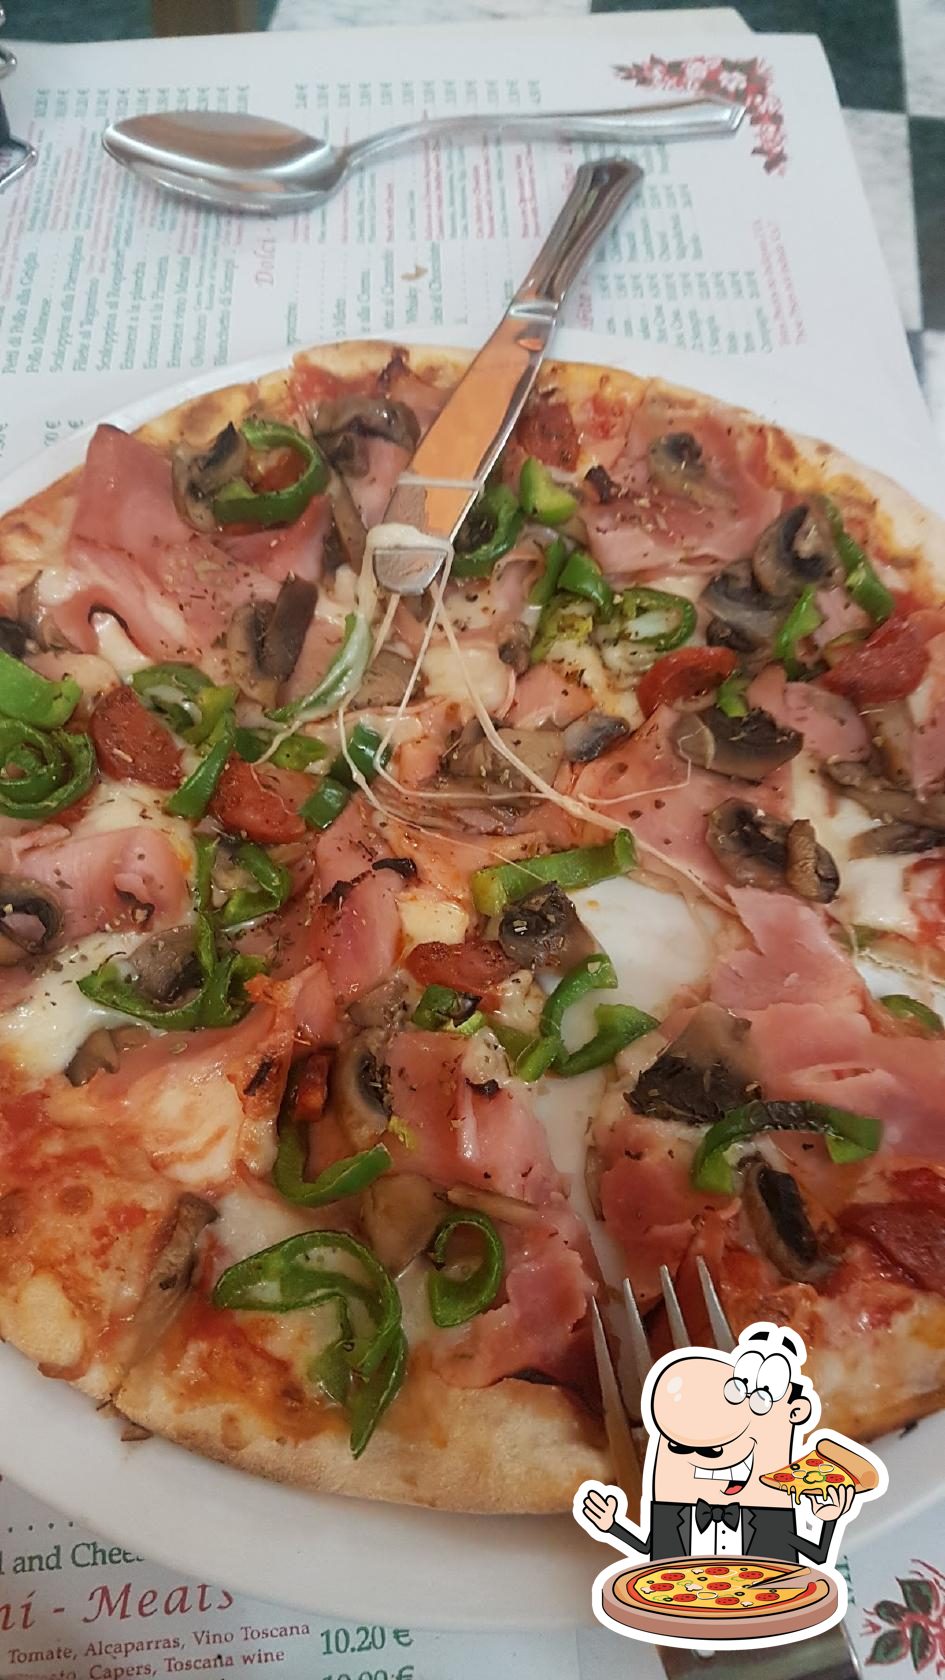 Menu at Pizzeria Papa Luigi, Fuengirola, Cam. Condesa